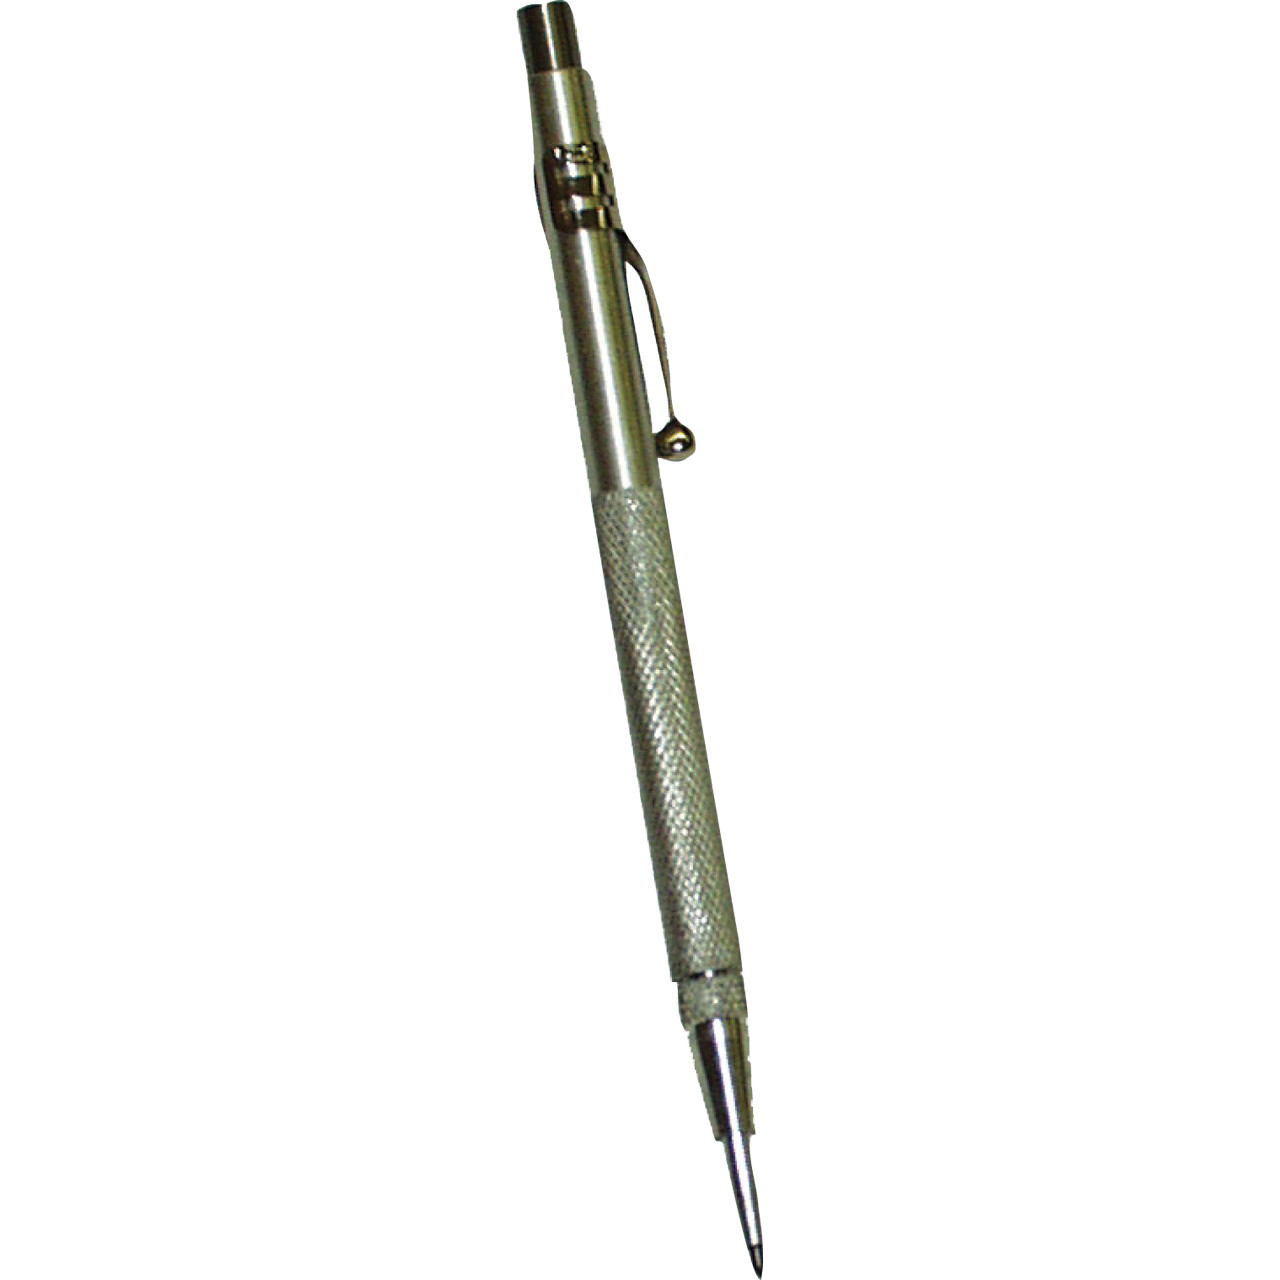 Weldmark Tungsten Carbide Scribing Tool, 1/8